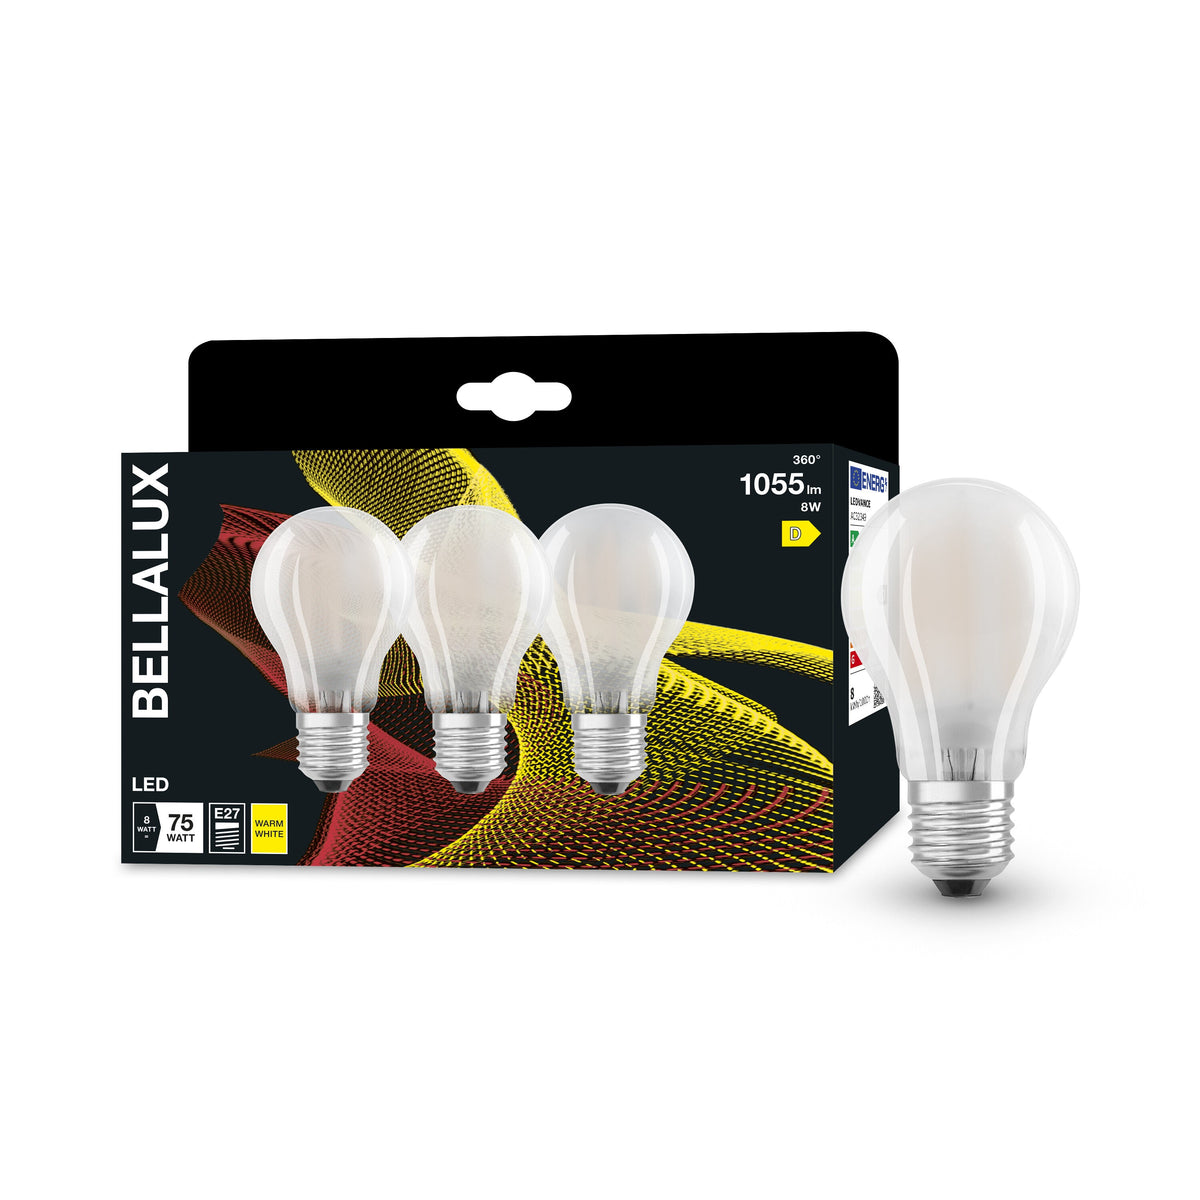 Lampada LED BELLALUX per attacco E27, vetro opaco, bianco caldo (2700K), 1055 lumen, ricambio per lampadine convenzionali da 75 W, non dimmerabile, confezione da 3